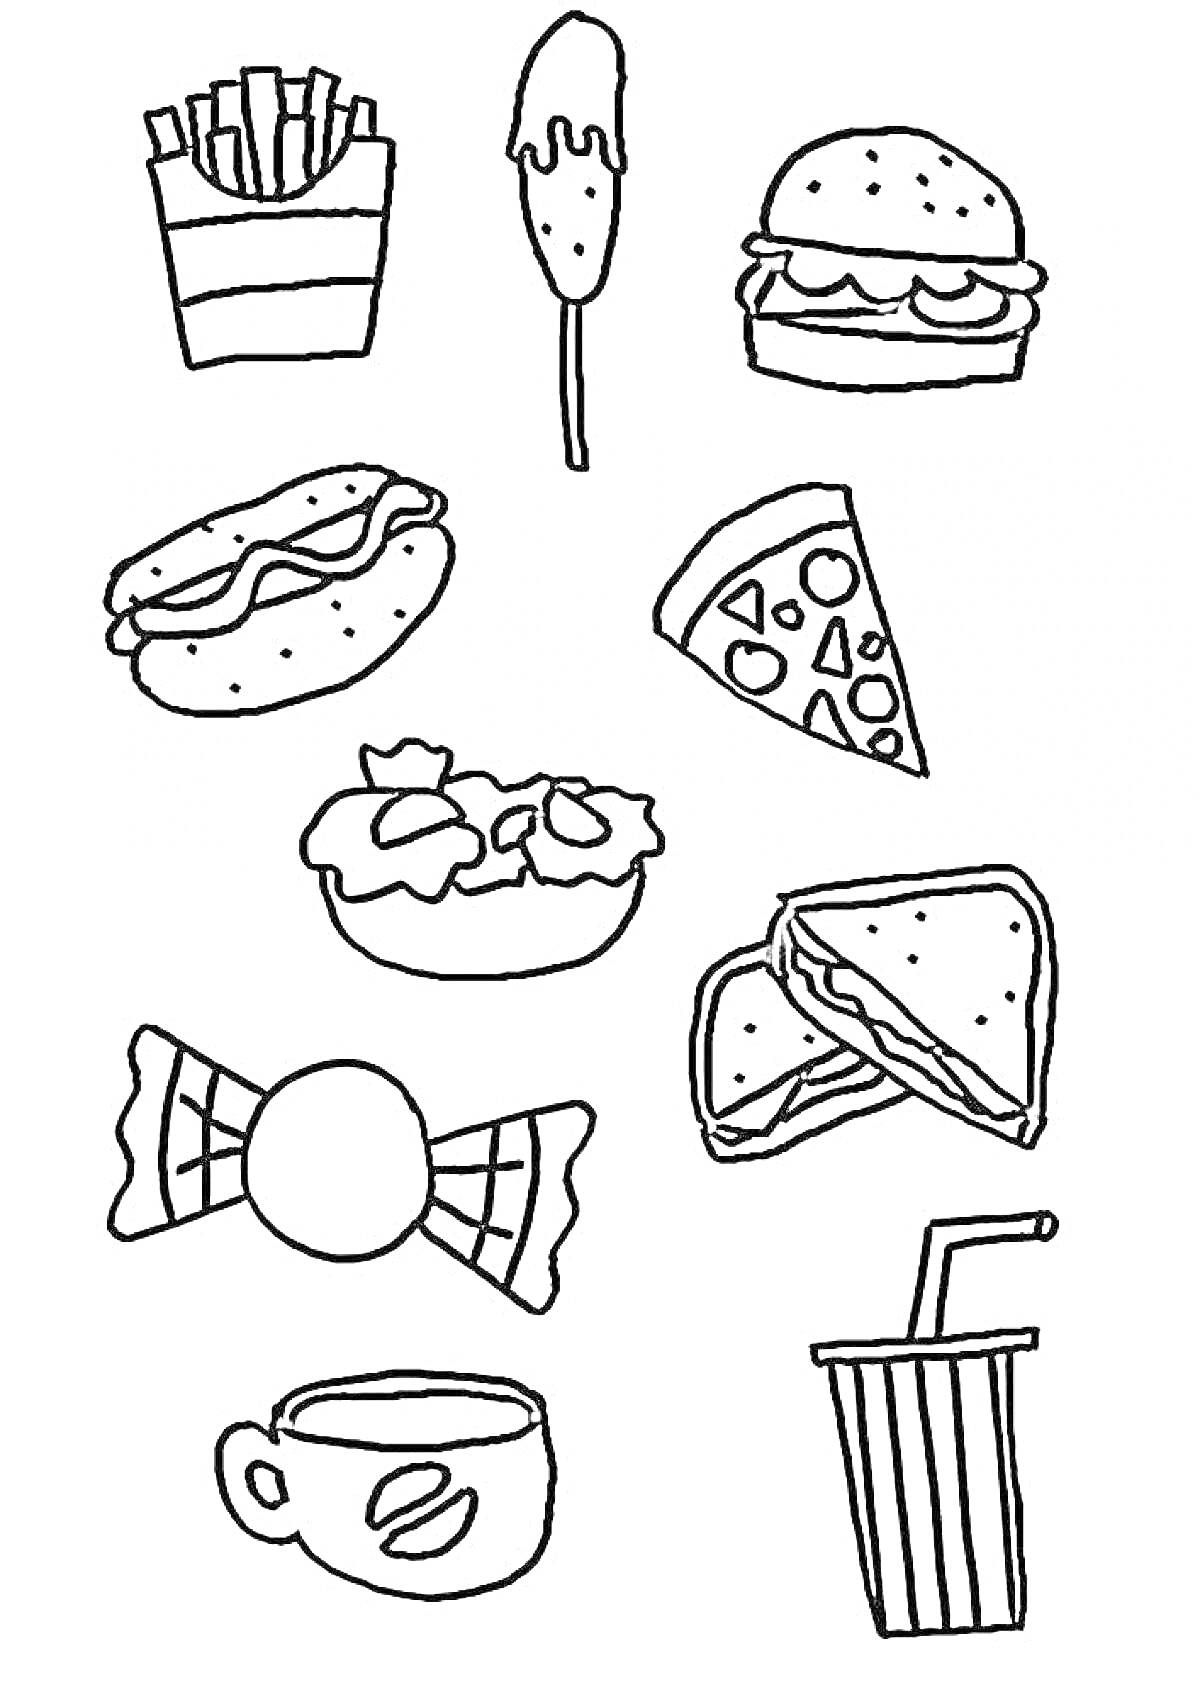 Раскраскафастфуд-комбо с картофелем фри, мороженым на палочке, бургером, хот-догом, пиццей, салатом, сэндвичем, леденцом, чашкой кофе и стаканом газировки